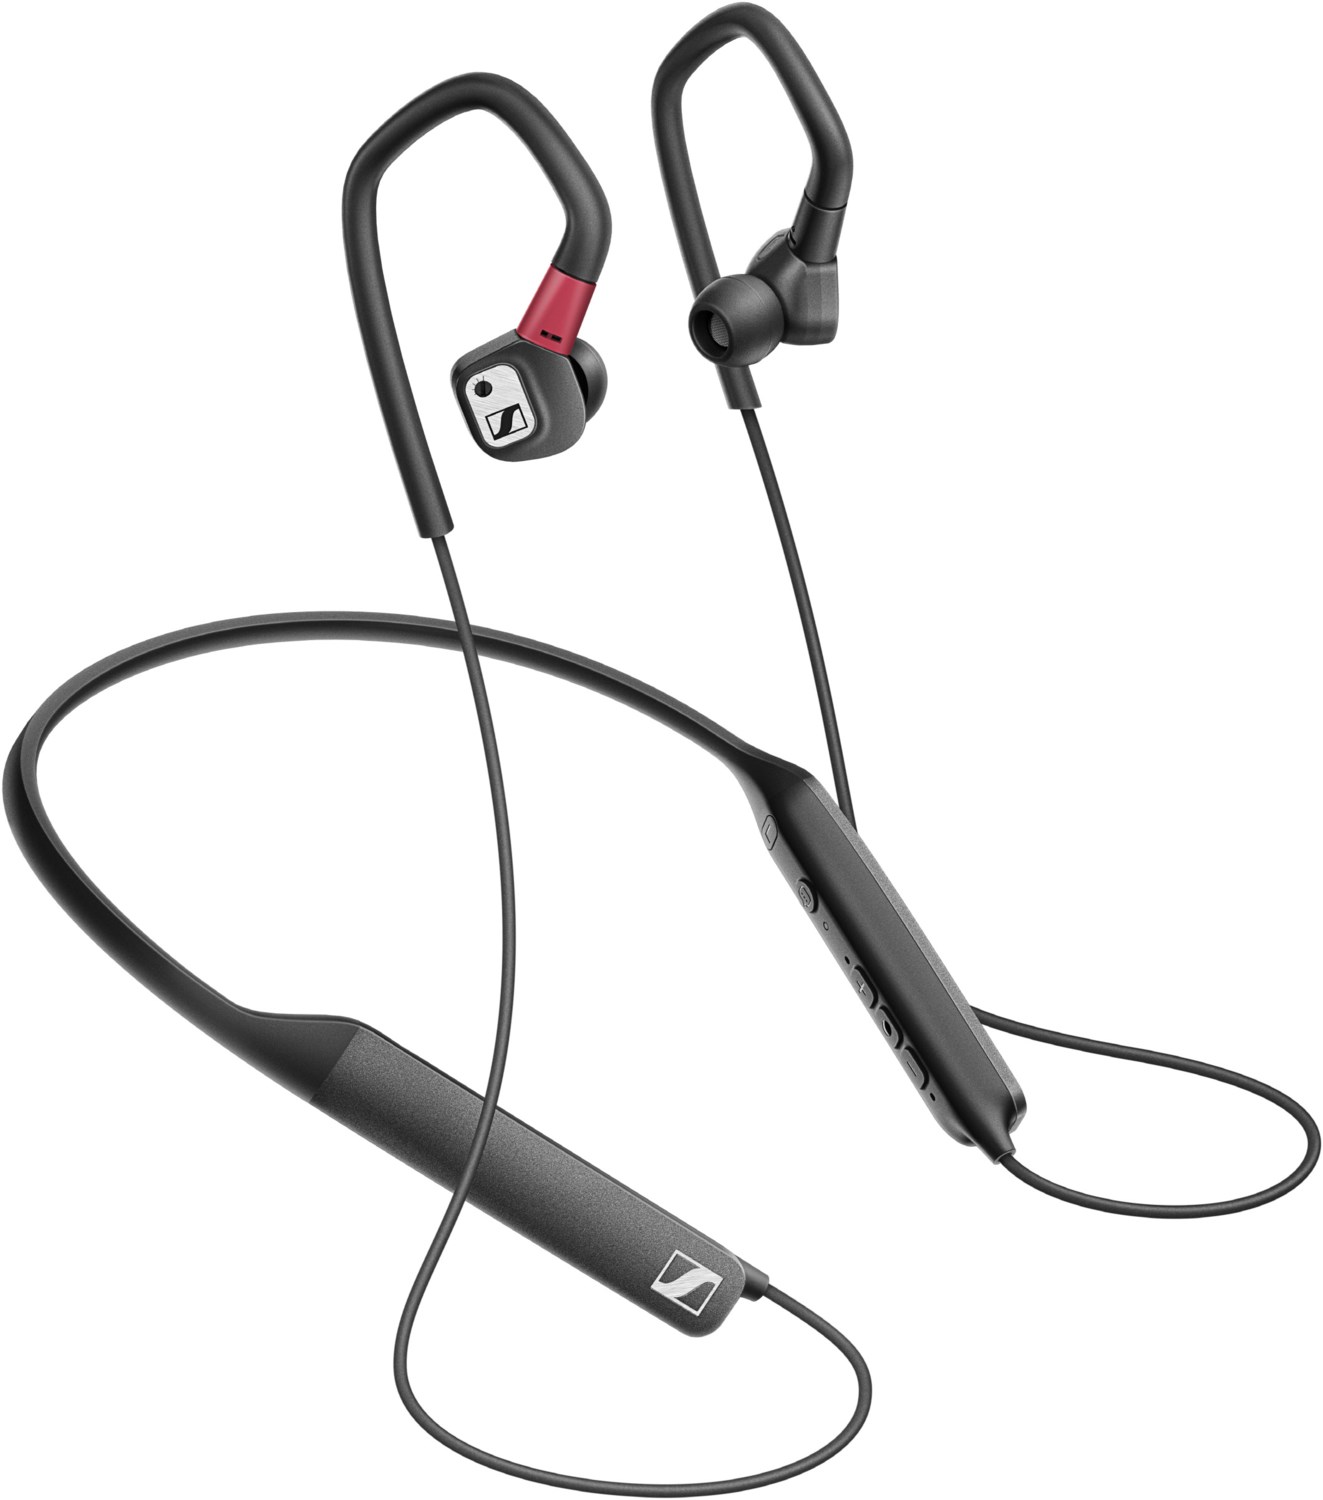 IE 80 S BT Bluetooth-Kopfhörer von Sennheiser